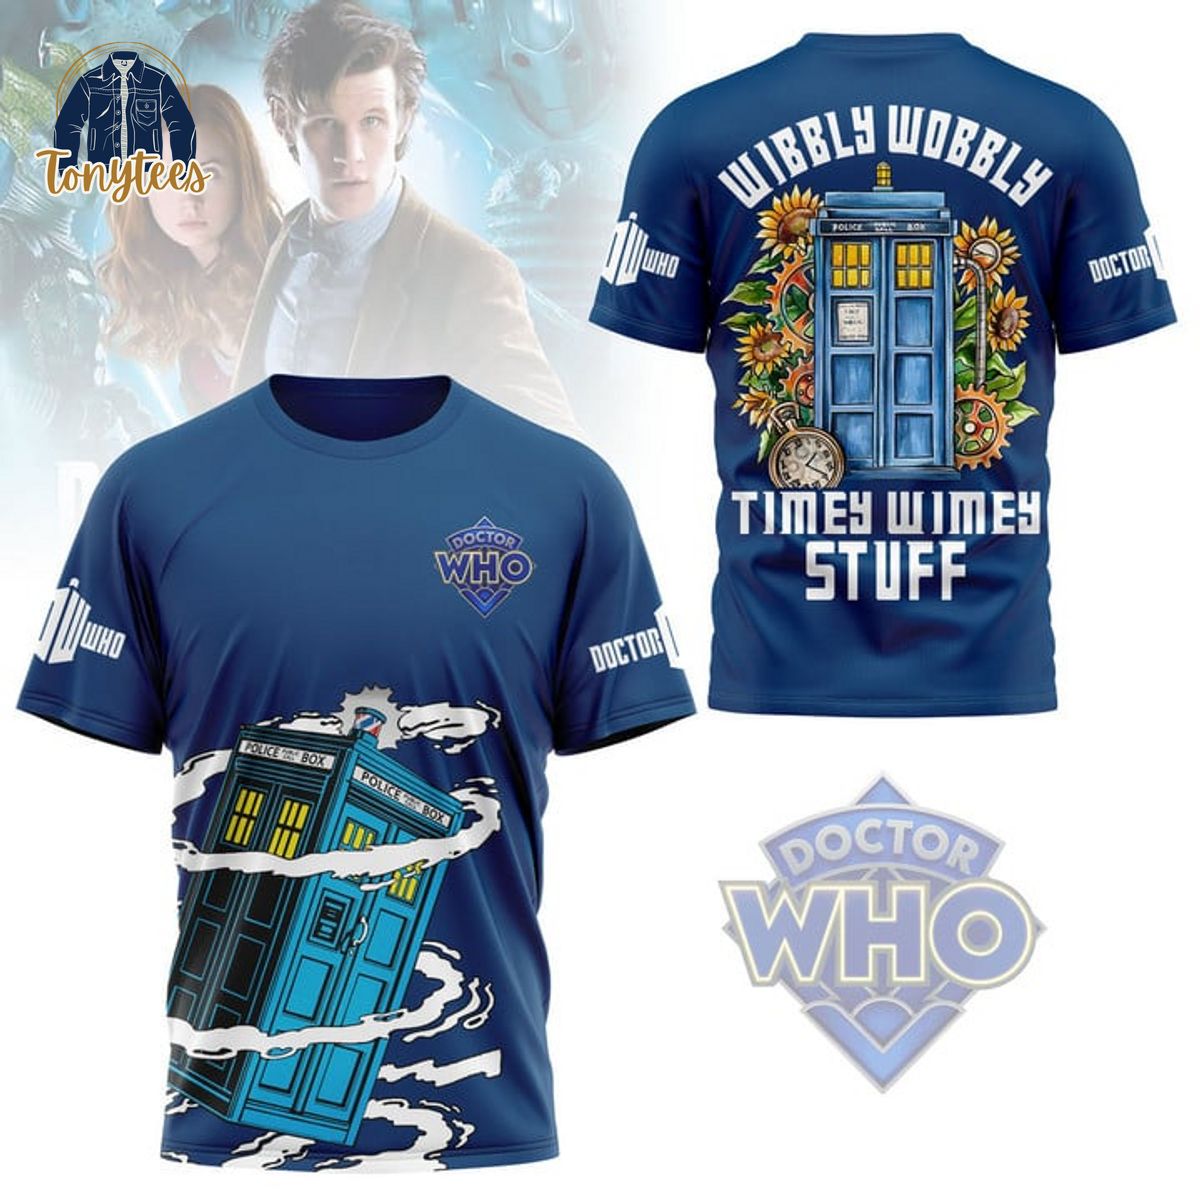 Doctor Who Wibbly Wobbly Timey Wimey Stuff Shirt